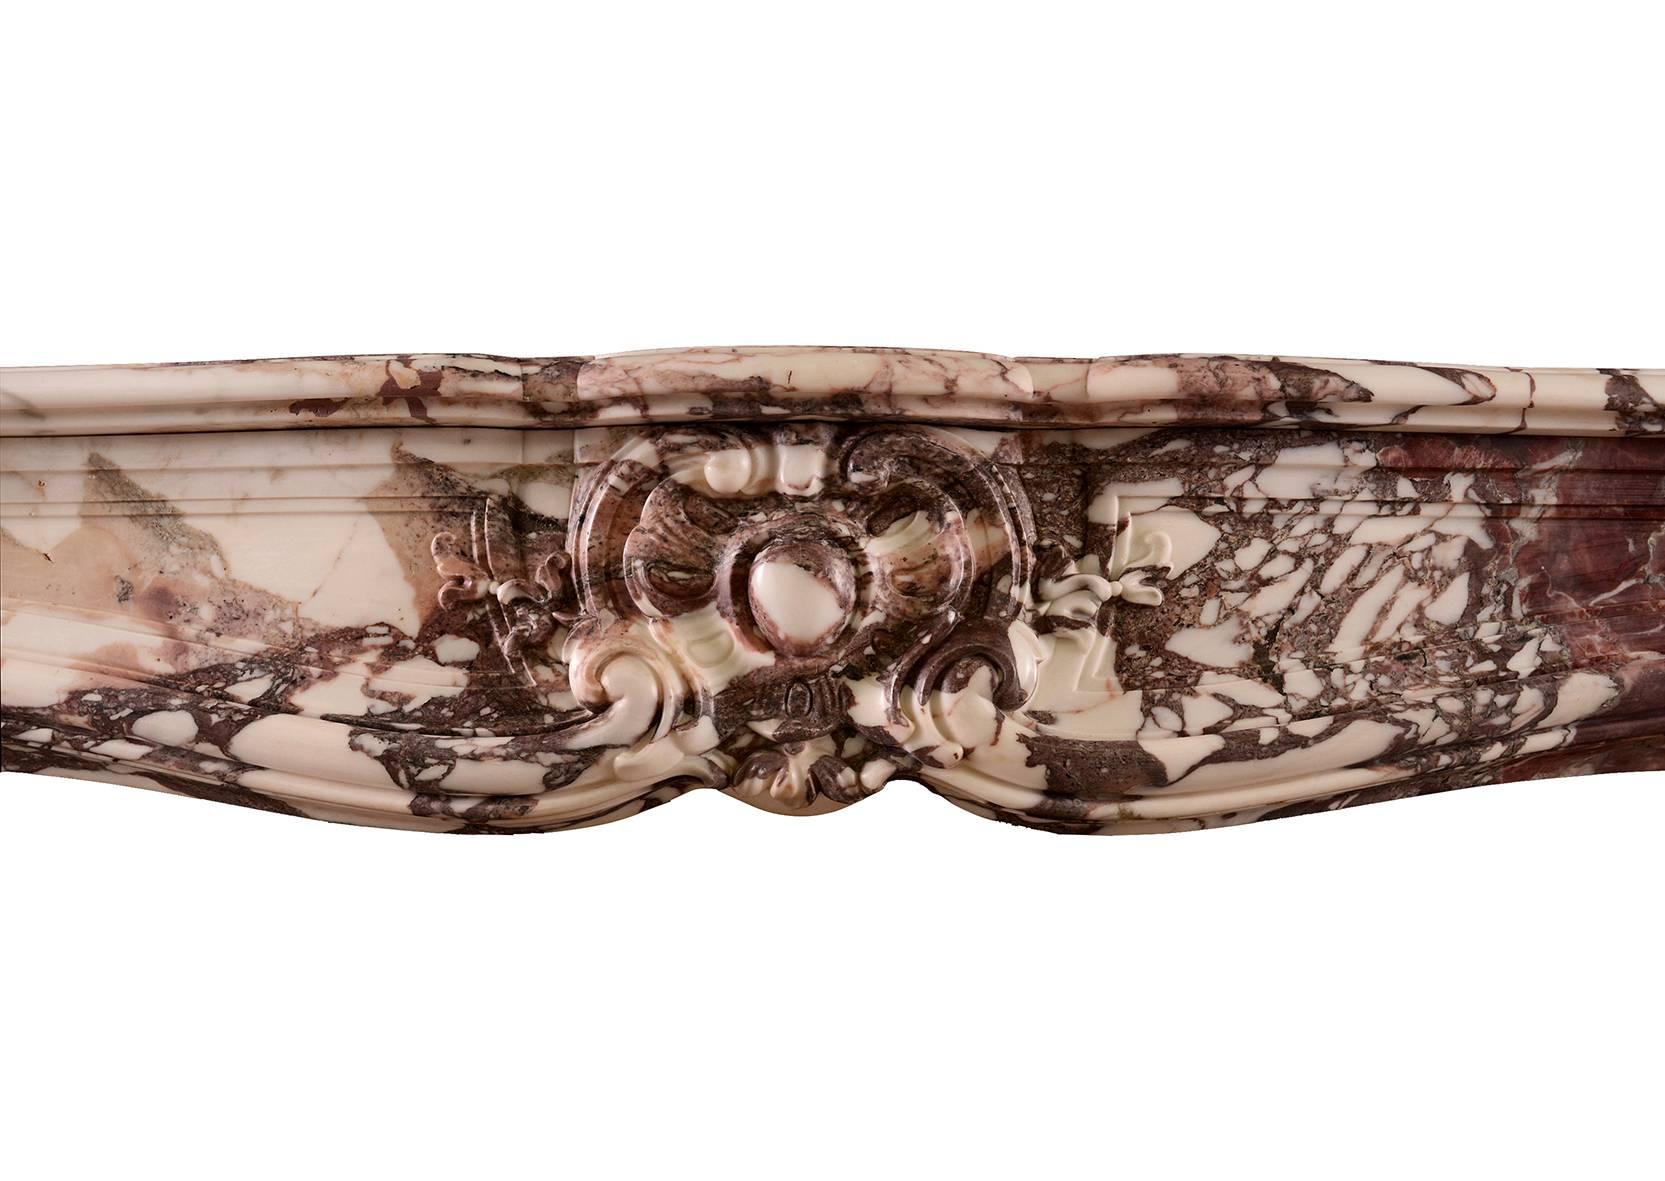 Cheminée Louis XV française du XVIIIe siècle en marbre Violette. Les jambages à volutes sont surmontés de coquilles sculptées, la frise lambrissée est ornée d'un cartouche central. Au-dessus, une étagère façonnée et moulurée. Une pièce